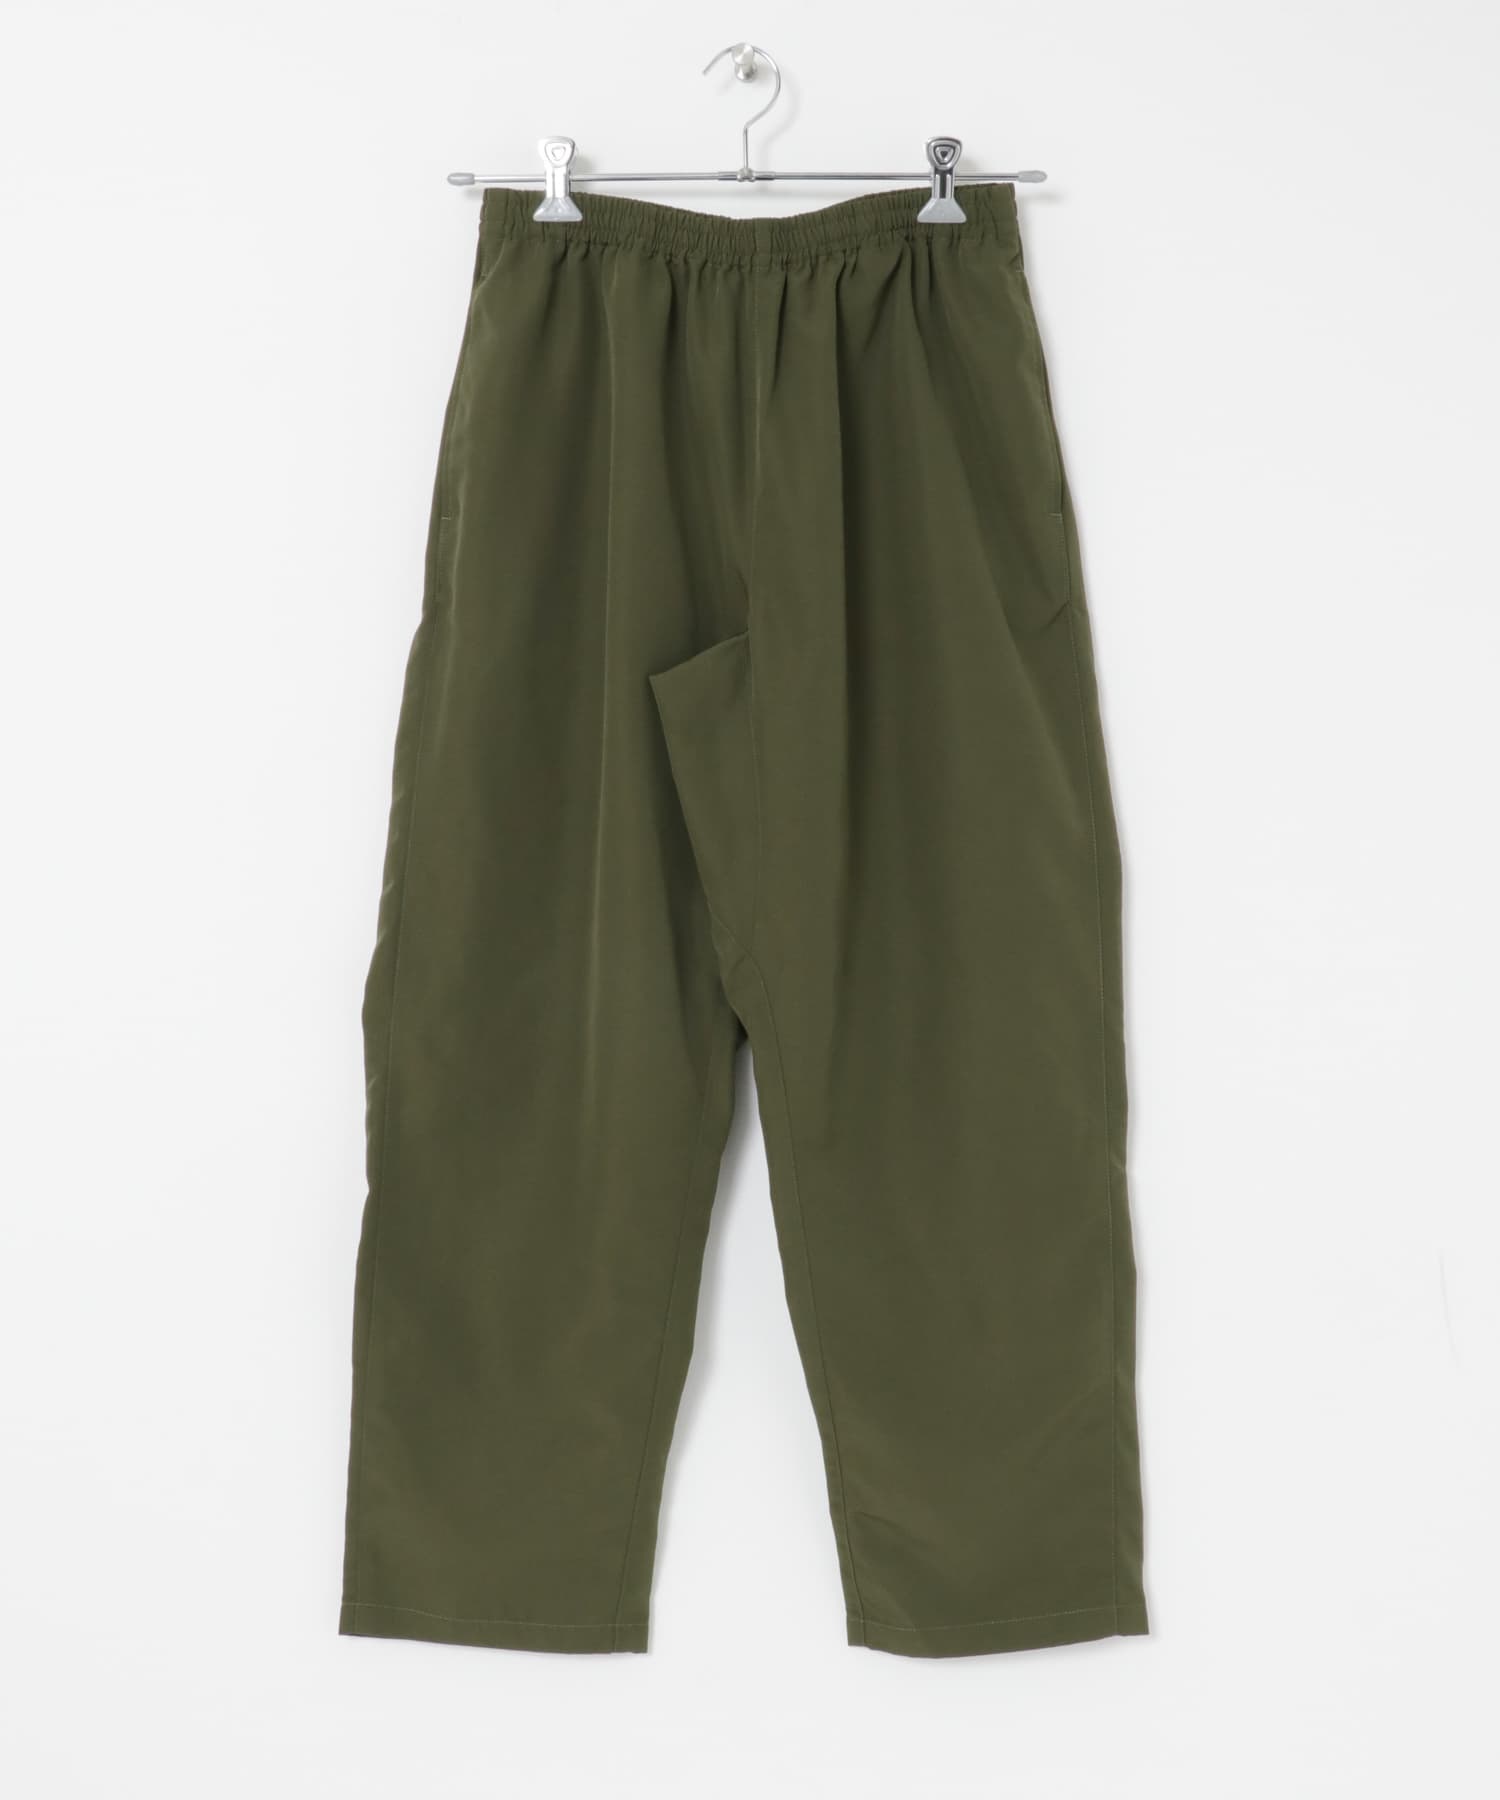 寬鬆輕便錐形褲(橄欖綠-L-OLIVE)